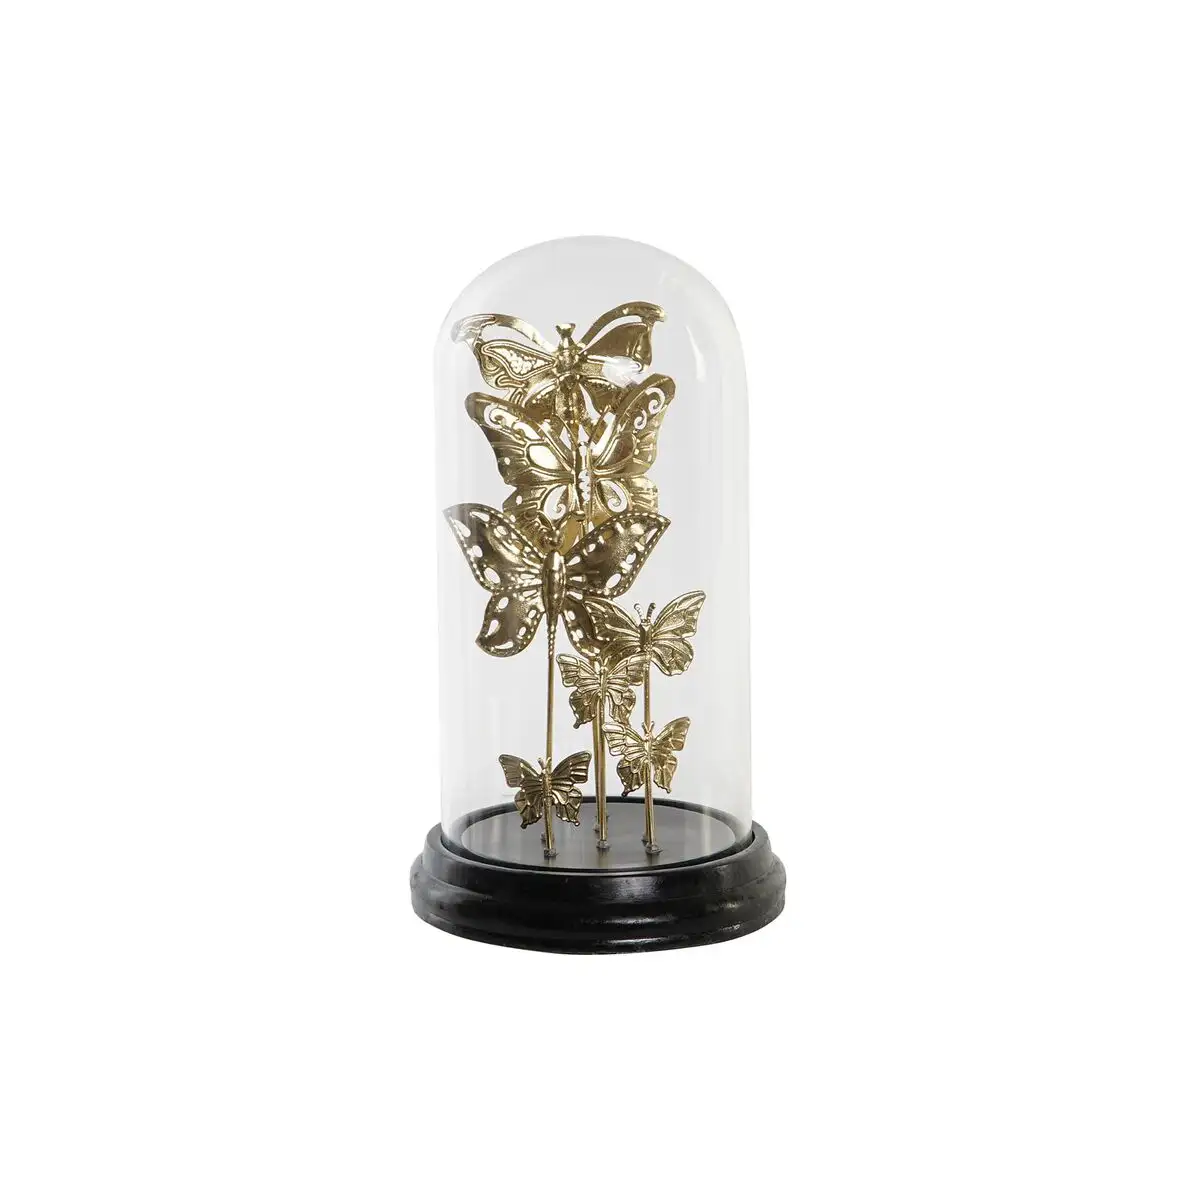 Figurine decorative dkd home decor verre noir dore metal papillons 18 5 x 18 5 x 32 5 cm _9677. Bienvenue sur DIAYTAR SENEGAL - Où le Shopping est une Affaire Personnelle. Découvrez notre sélection et choisissez des produits qui reflètent votre unicité et votre individualité.